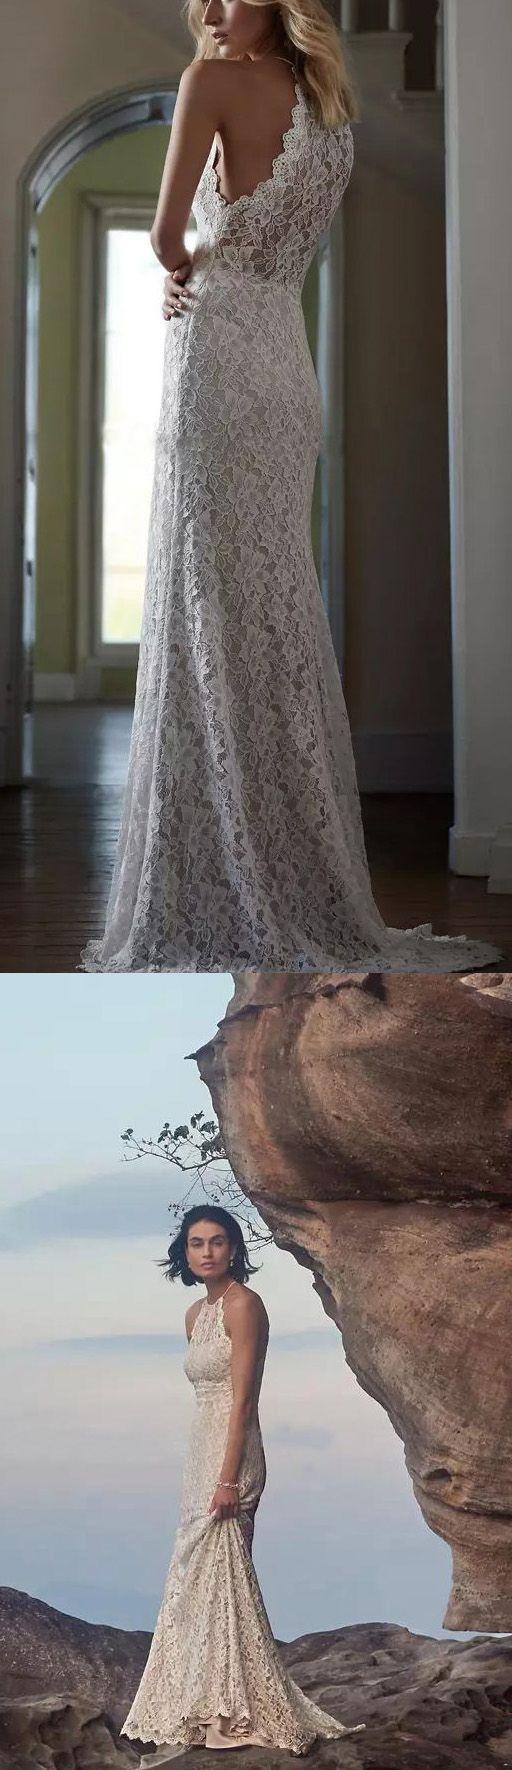 Hochzeit - White Wedding Dresses, Long Wedding Dresses, Long White Wedding Dresses With Lace Sweep Train Halter Sale Online WF02G48-823